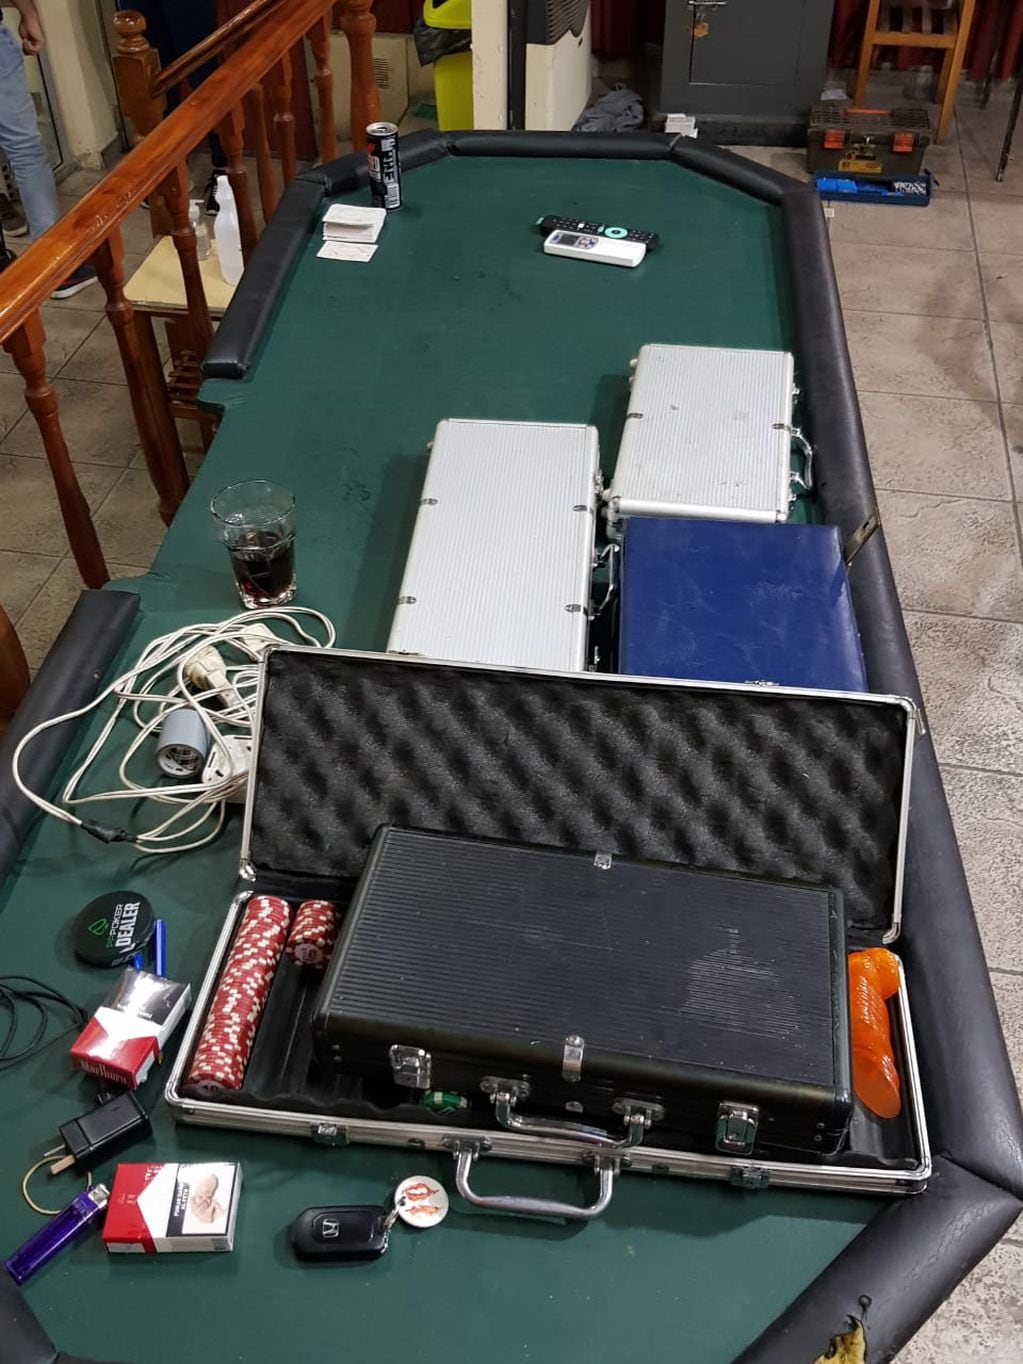 En uno de los domicilios inspeccionados encontraron tableros de juego y dispositivos electrónicos. (MPA)